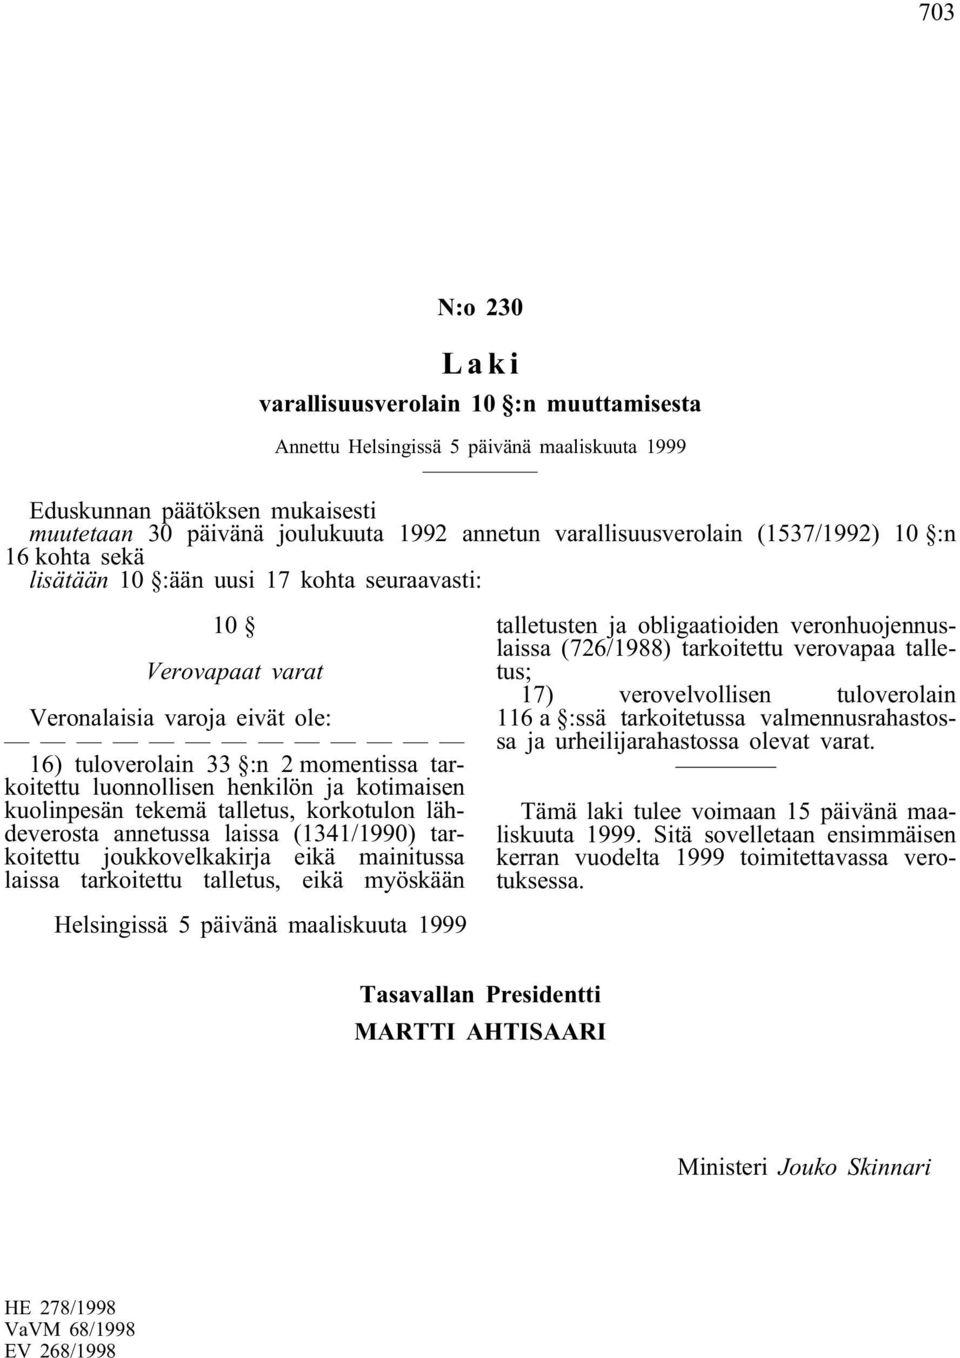 korkotulon lähdeverosta annetussa laissa (1341/1990) tarkoitettu joukkovelkakirja eikä mainitussa laissa tarkoitettu talletus, eikä myöskään talletusten ja obligaatioiden veronhuojennuslaissa